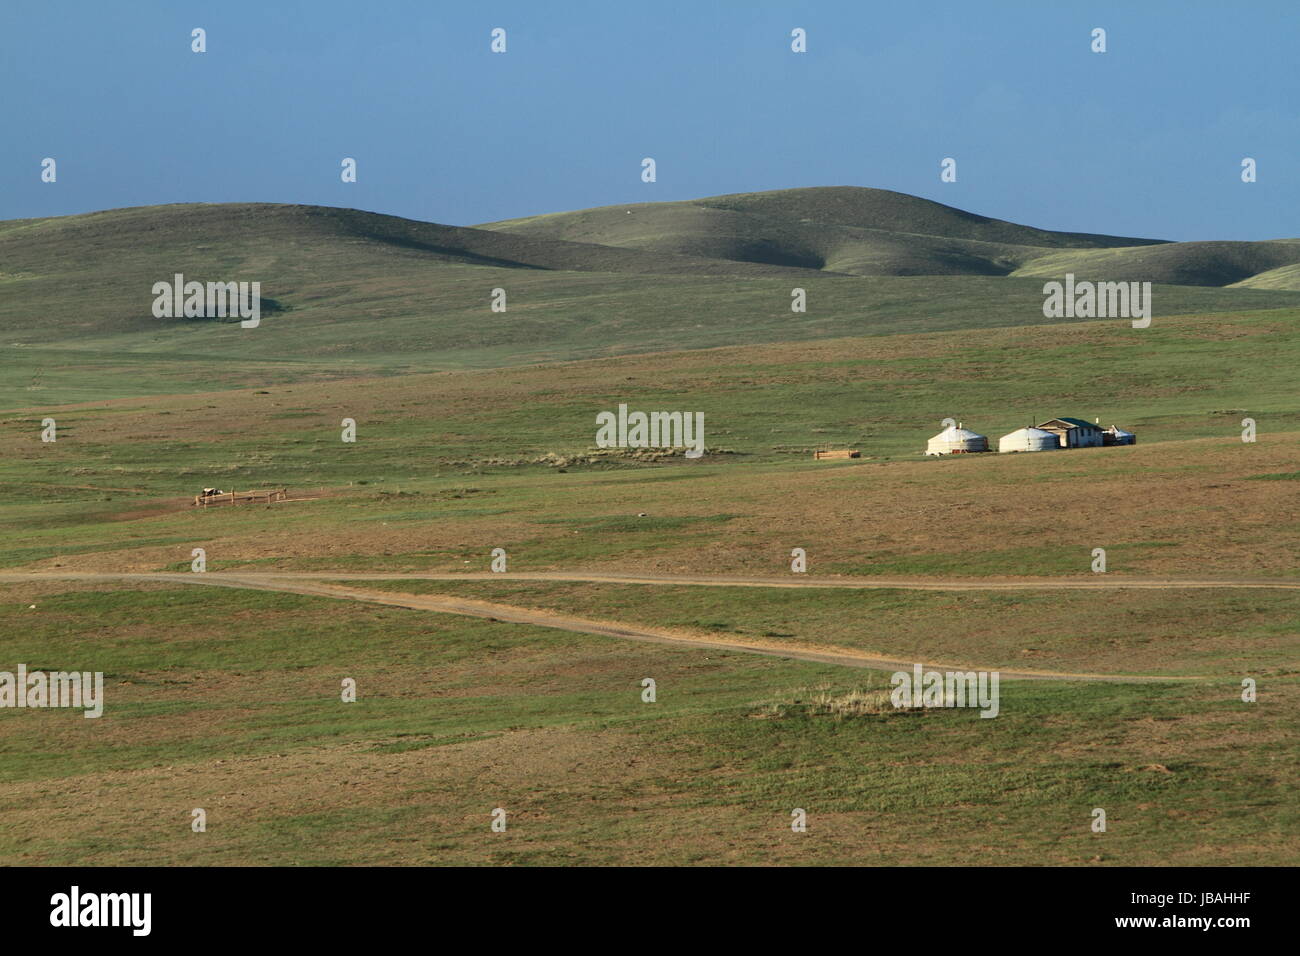 Le parc national de khustain en Mongolie Banque D'Images